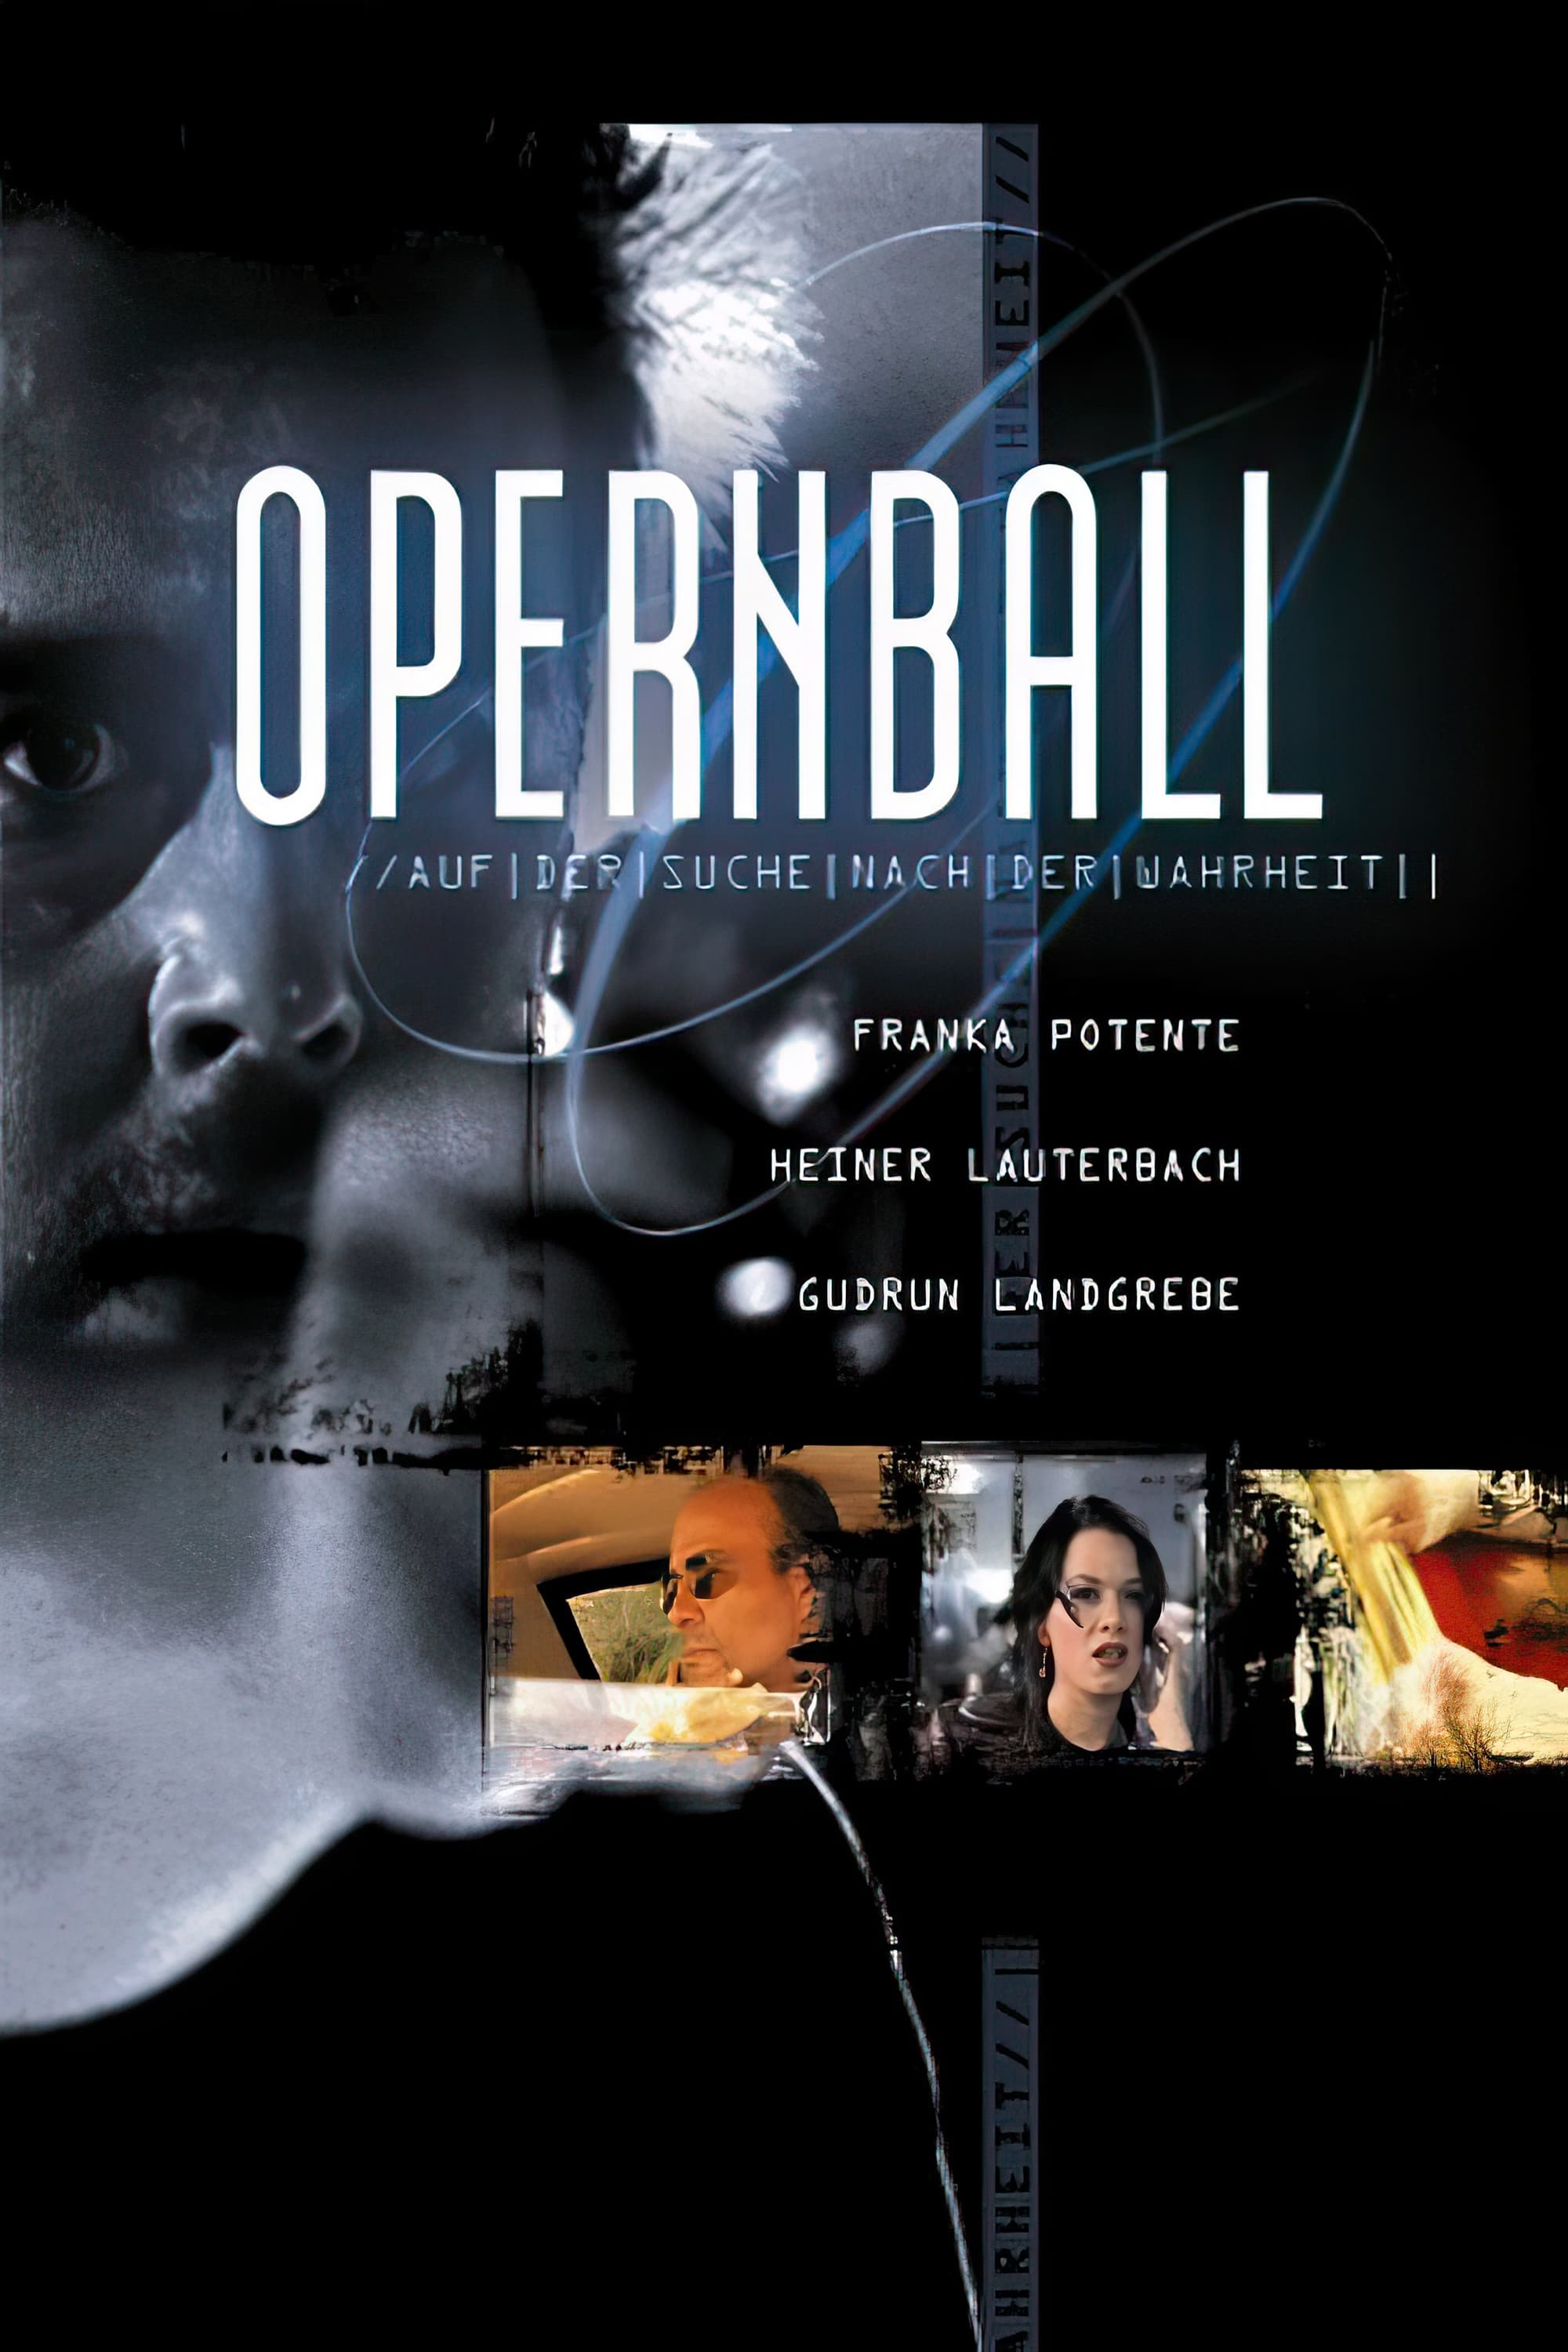 Opera ball (1998)